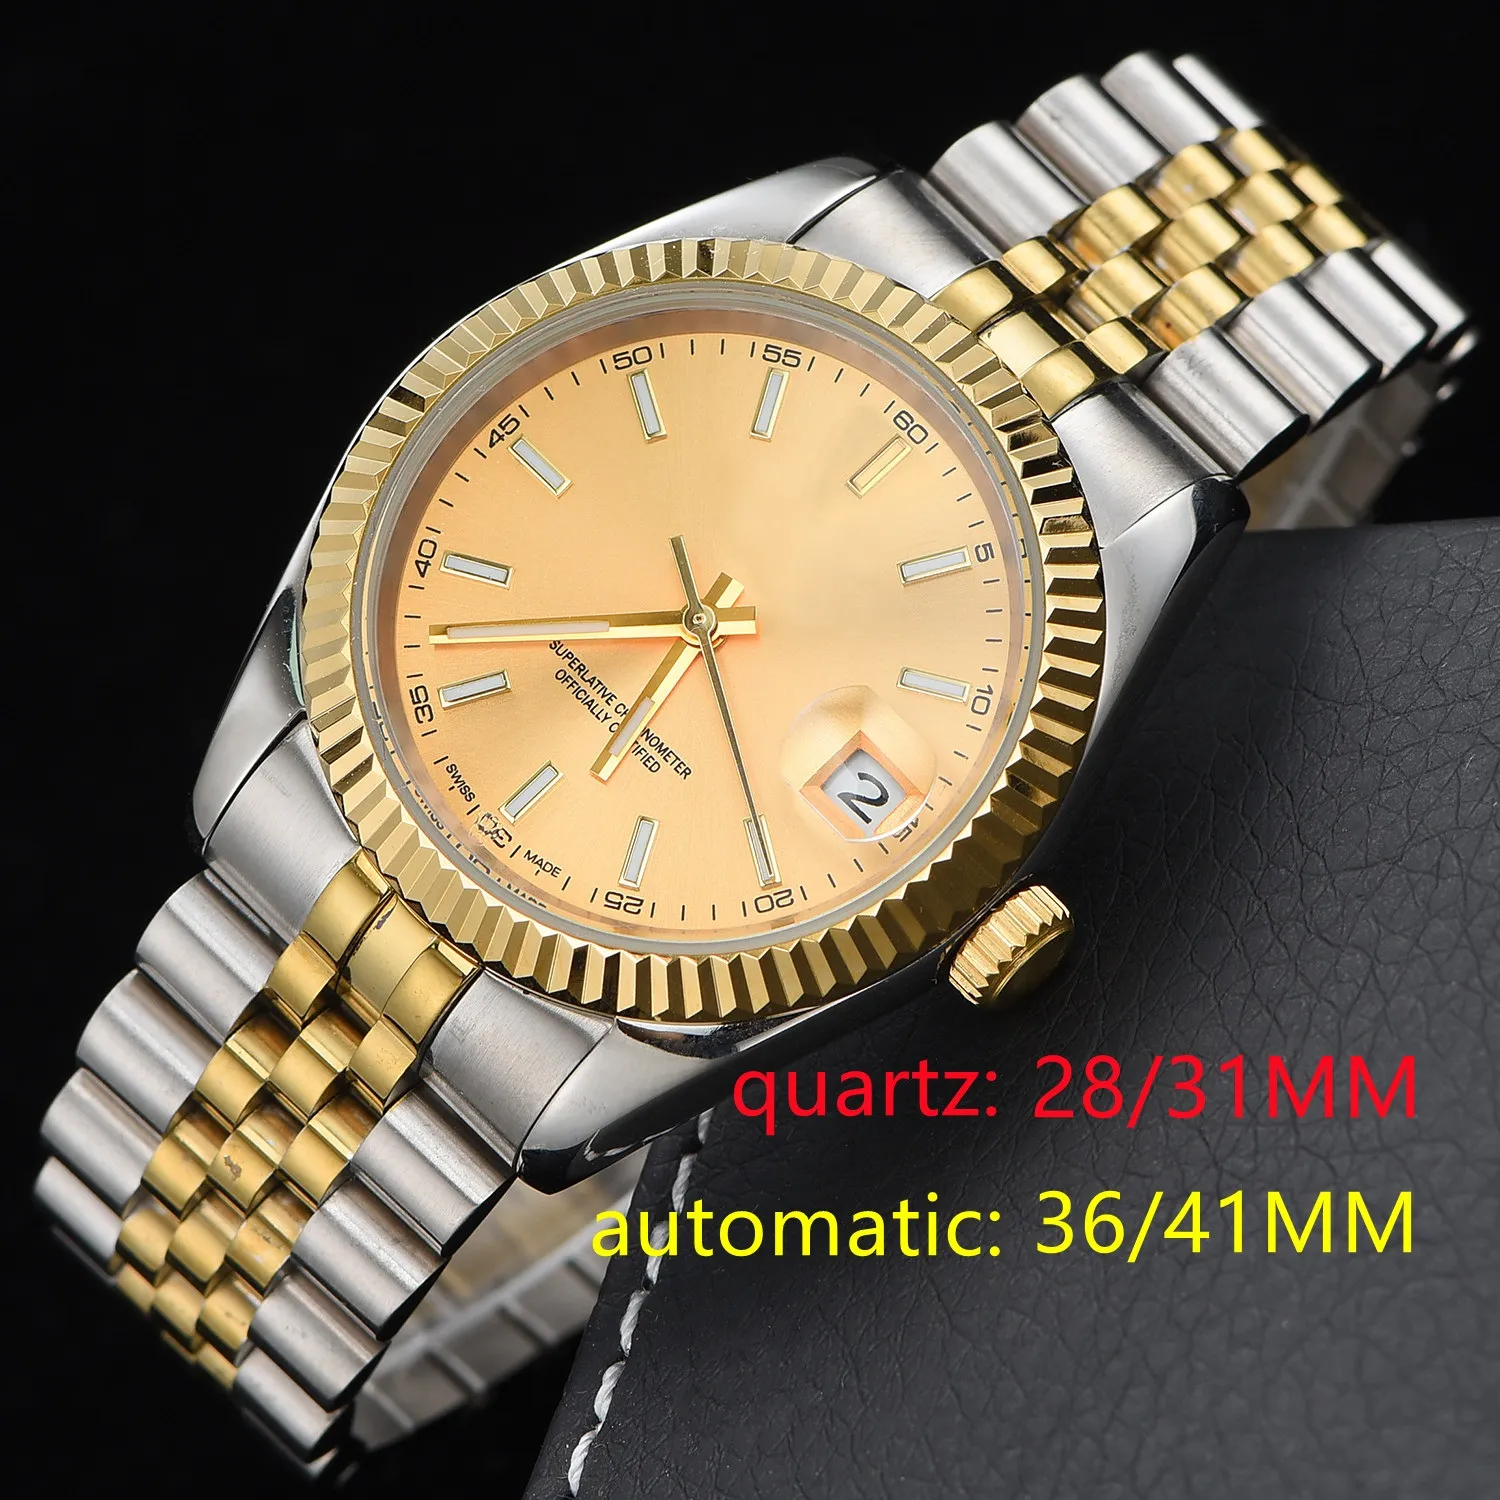 Najwyższa jakość 28/11 mm kwarc 36/41 mm automatyczne zegarki kobiet 2813 STEL nierdzewna zegarek Wodoodporne światła samozadowolet